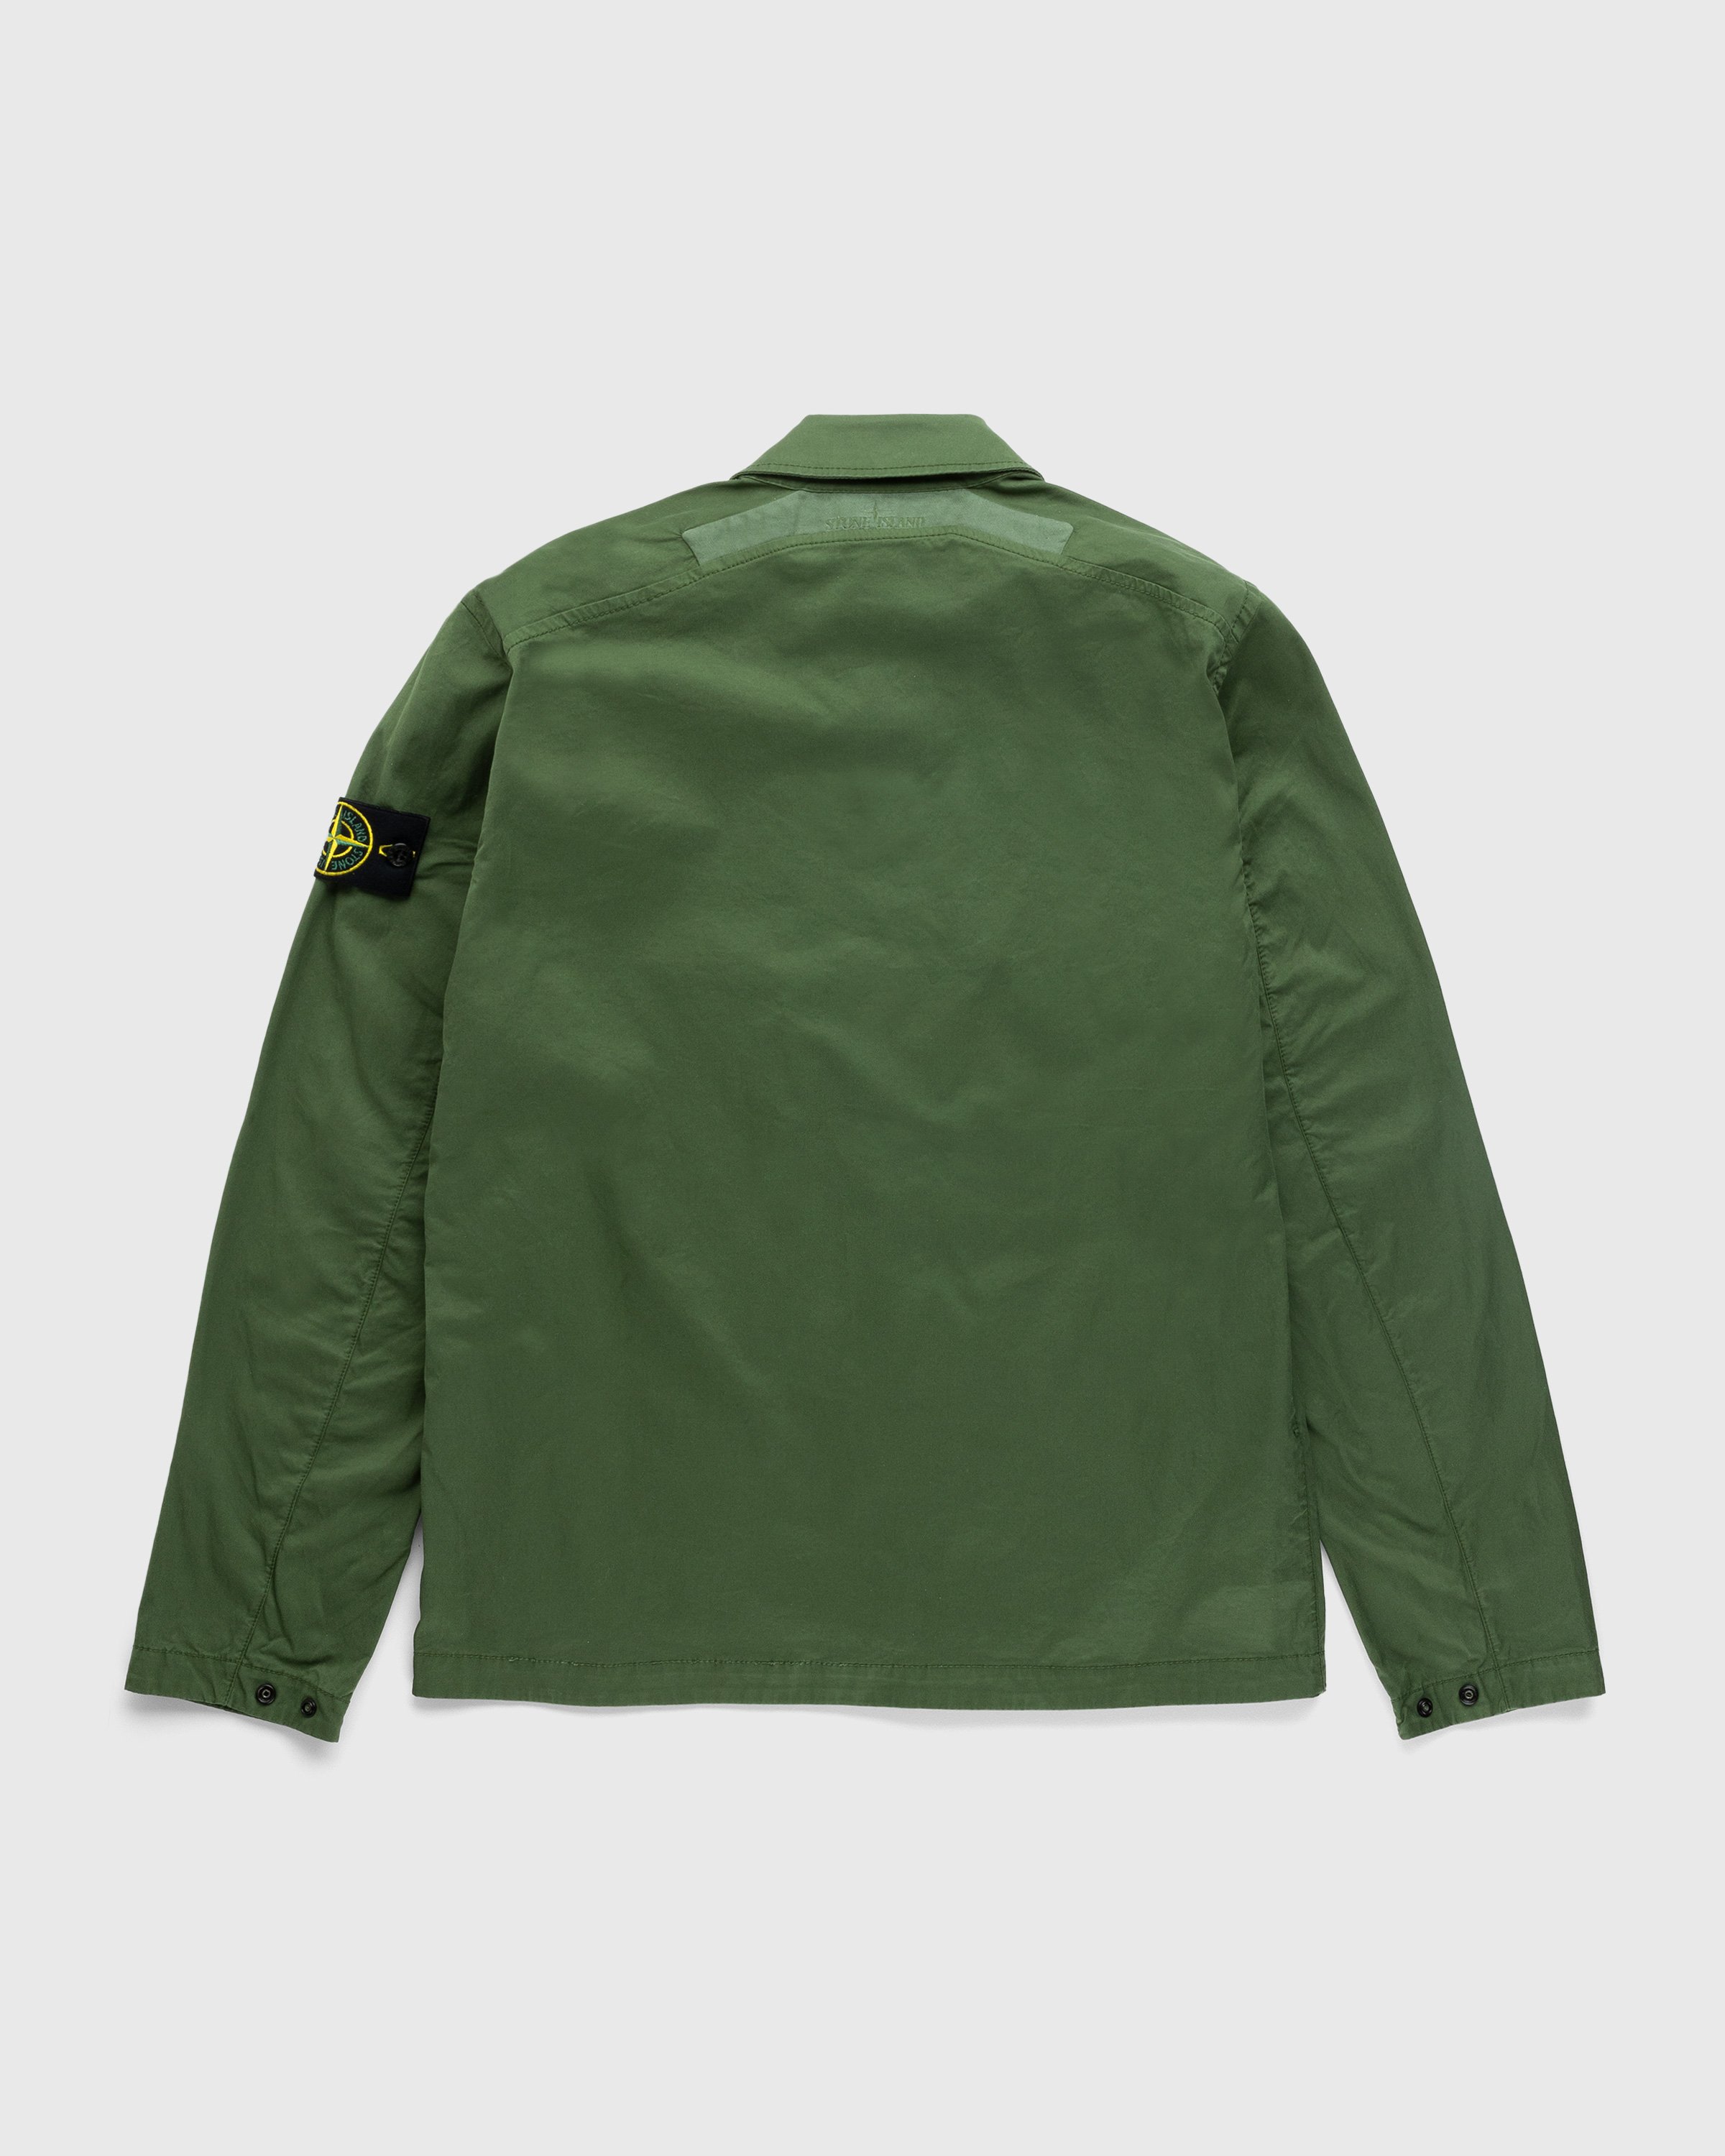 Stone Island - Garment-Dyed Cotton Overshirt Olive - Clothing - Green - Image 2